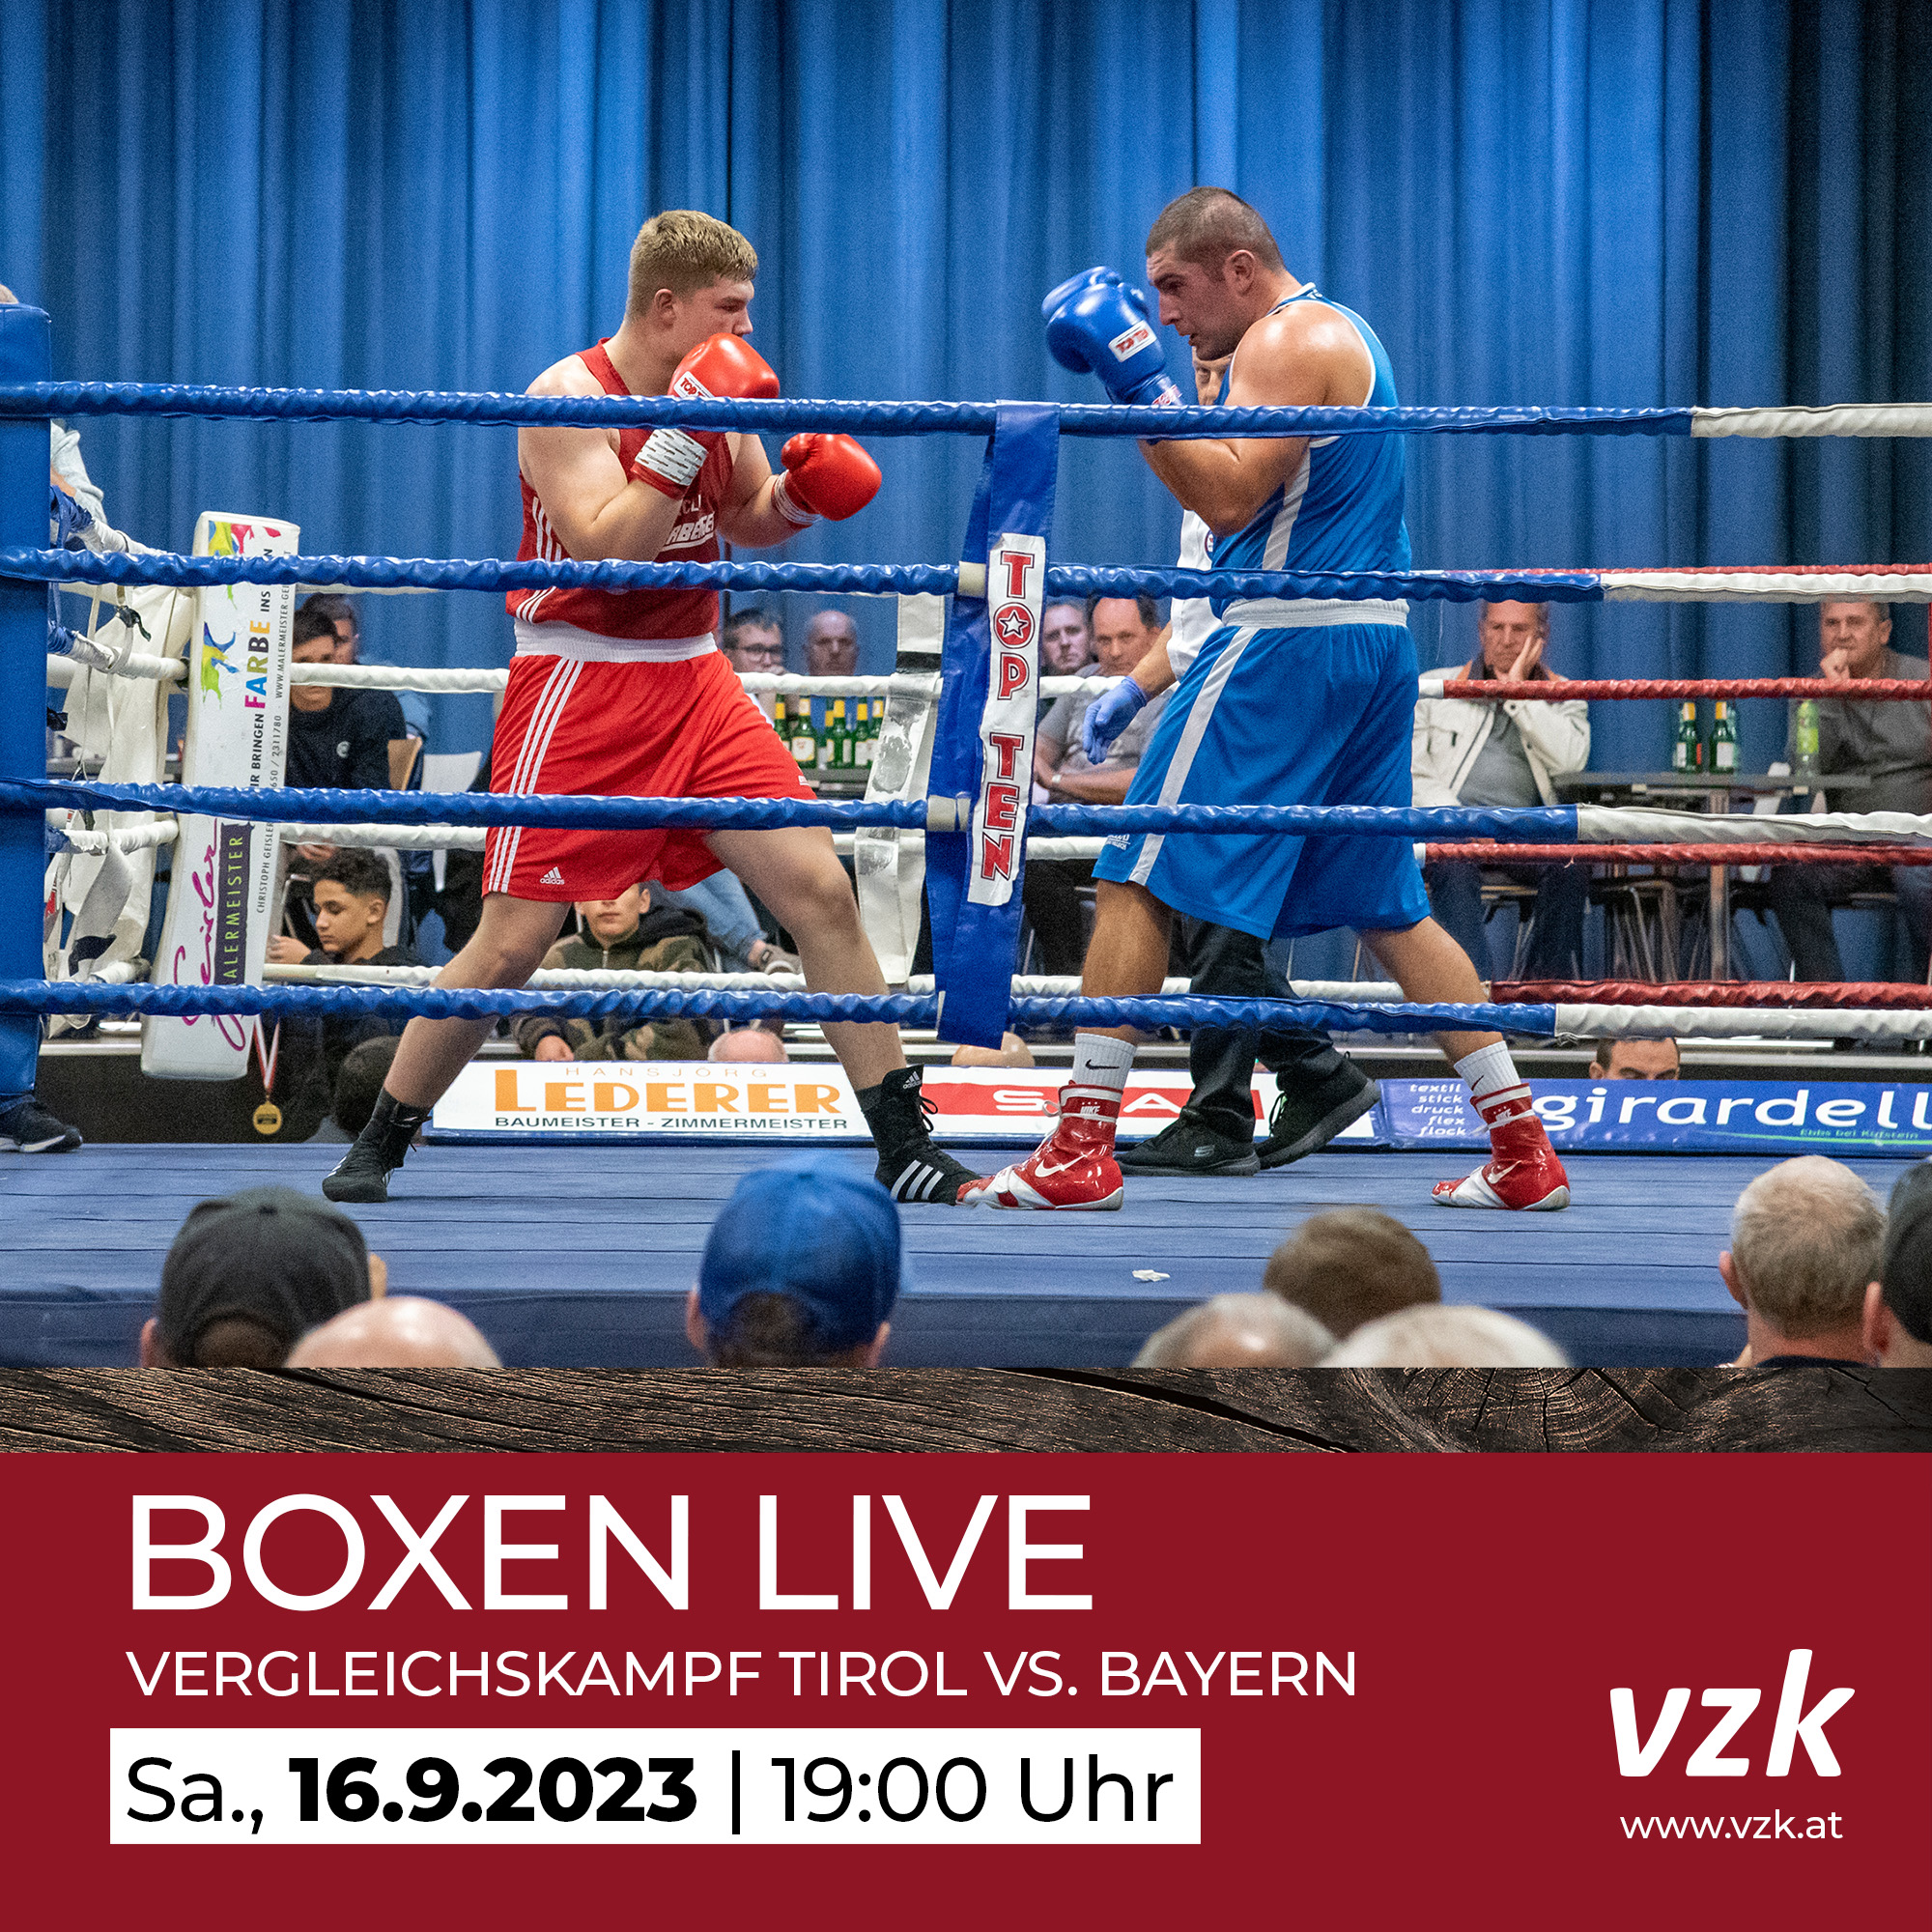 Zwei Boxer im Boxring